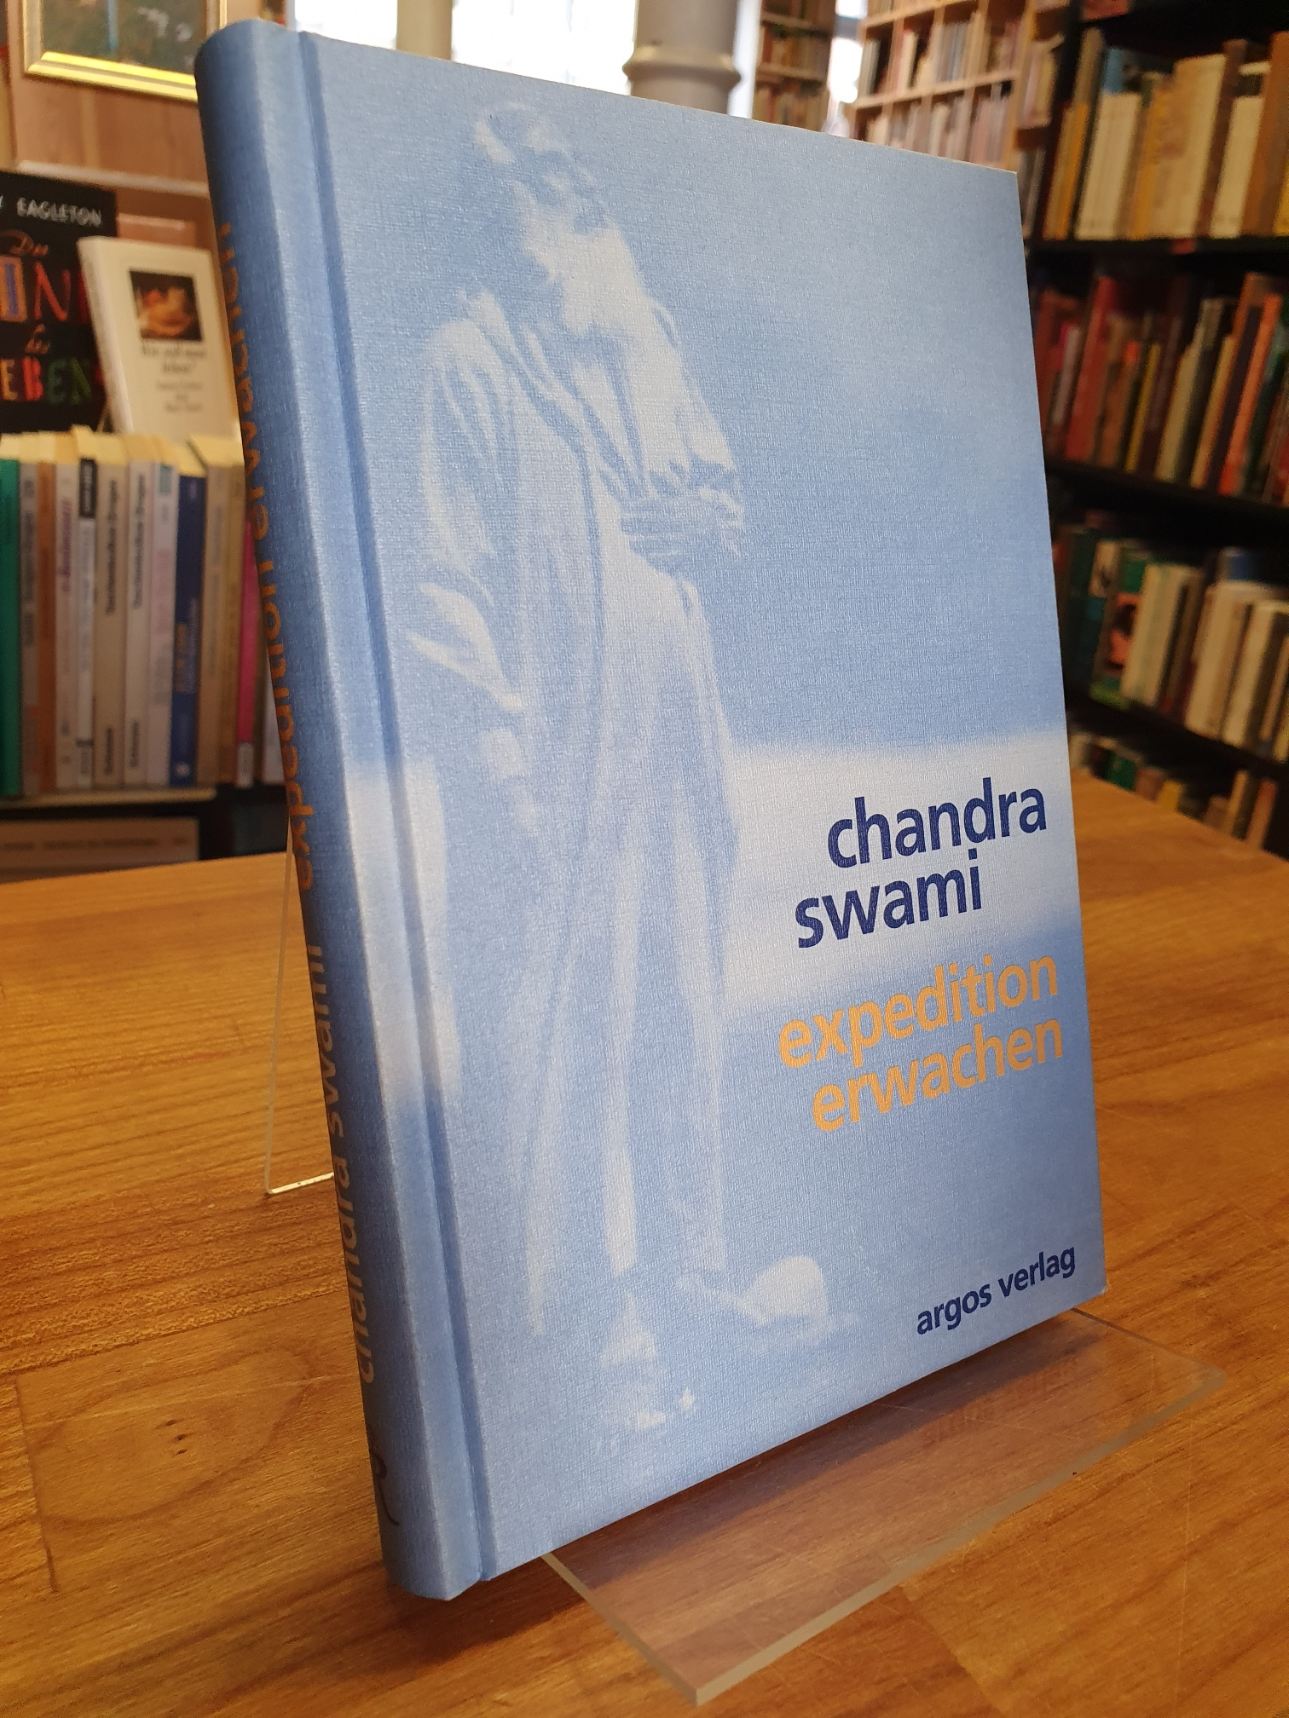 Chandra (Swami), Expedition Erwachen,